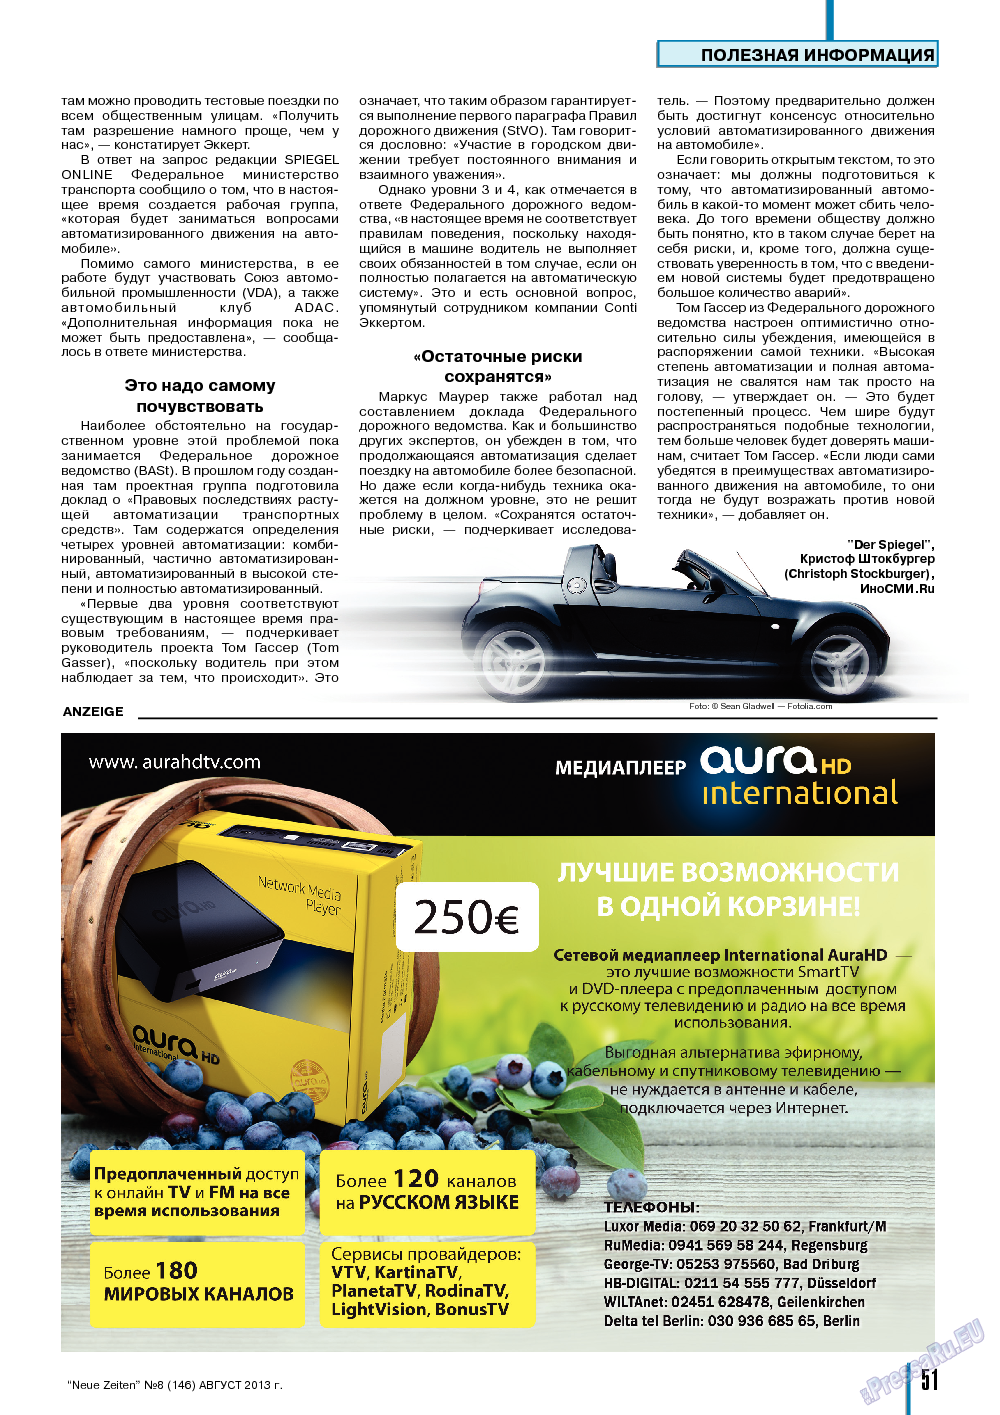 Neue Zeiten, журнал. 2013 №8 стр.51